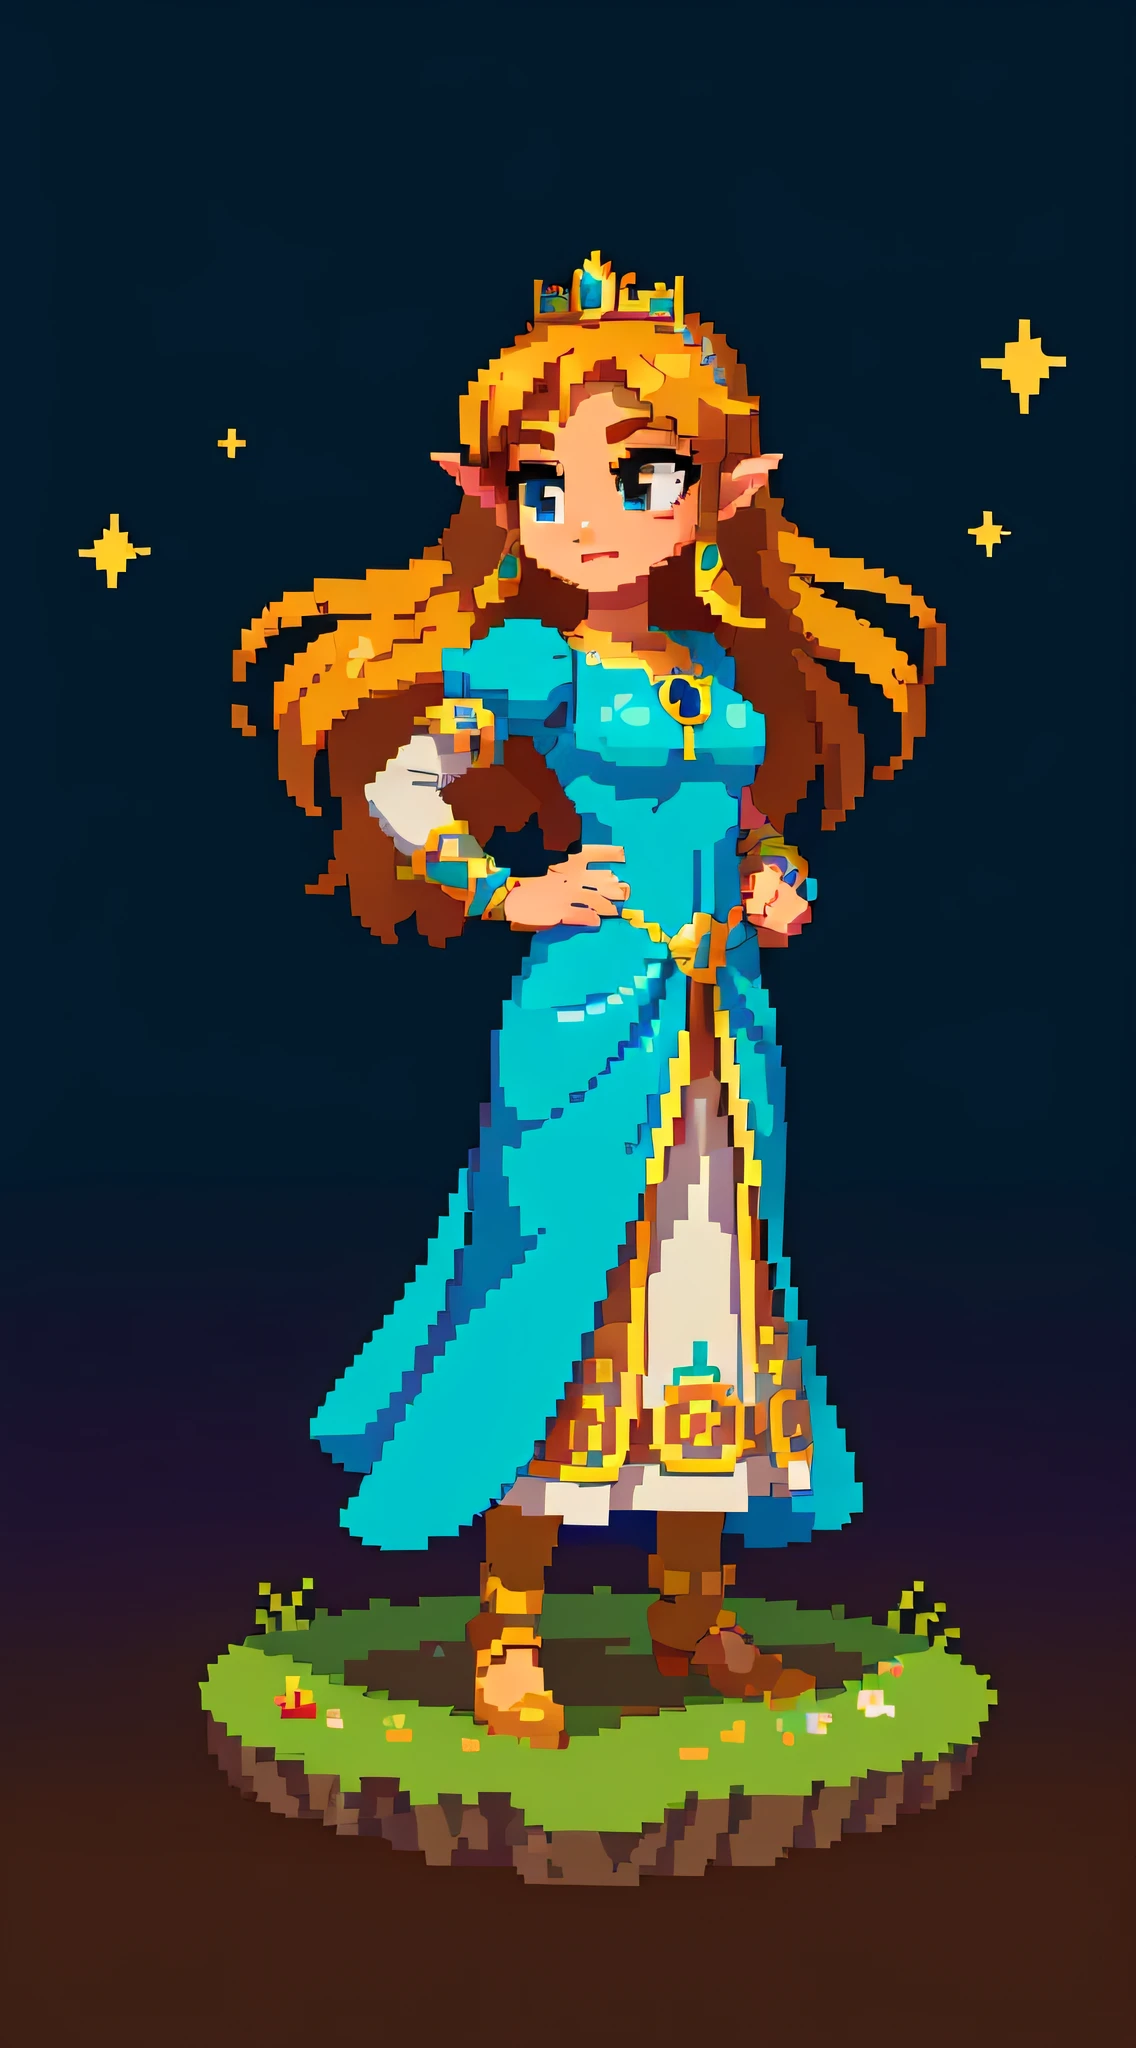 Princesa Zelda retratada em um estilo pixel art, de pé graciosamente contra um fundo simples de uma noite estrelada, seu vestido icônico e tiara brilhando com cores vibrantes de pixel, evocando uma sensação nostálgica da estética clássica dos videogames, arte de pixel, criado com Piskel